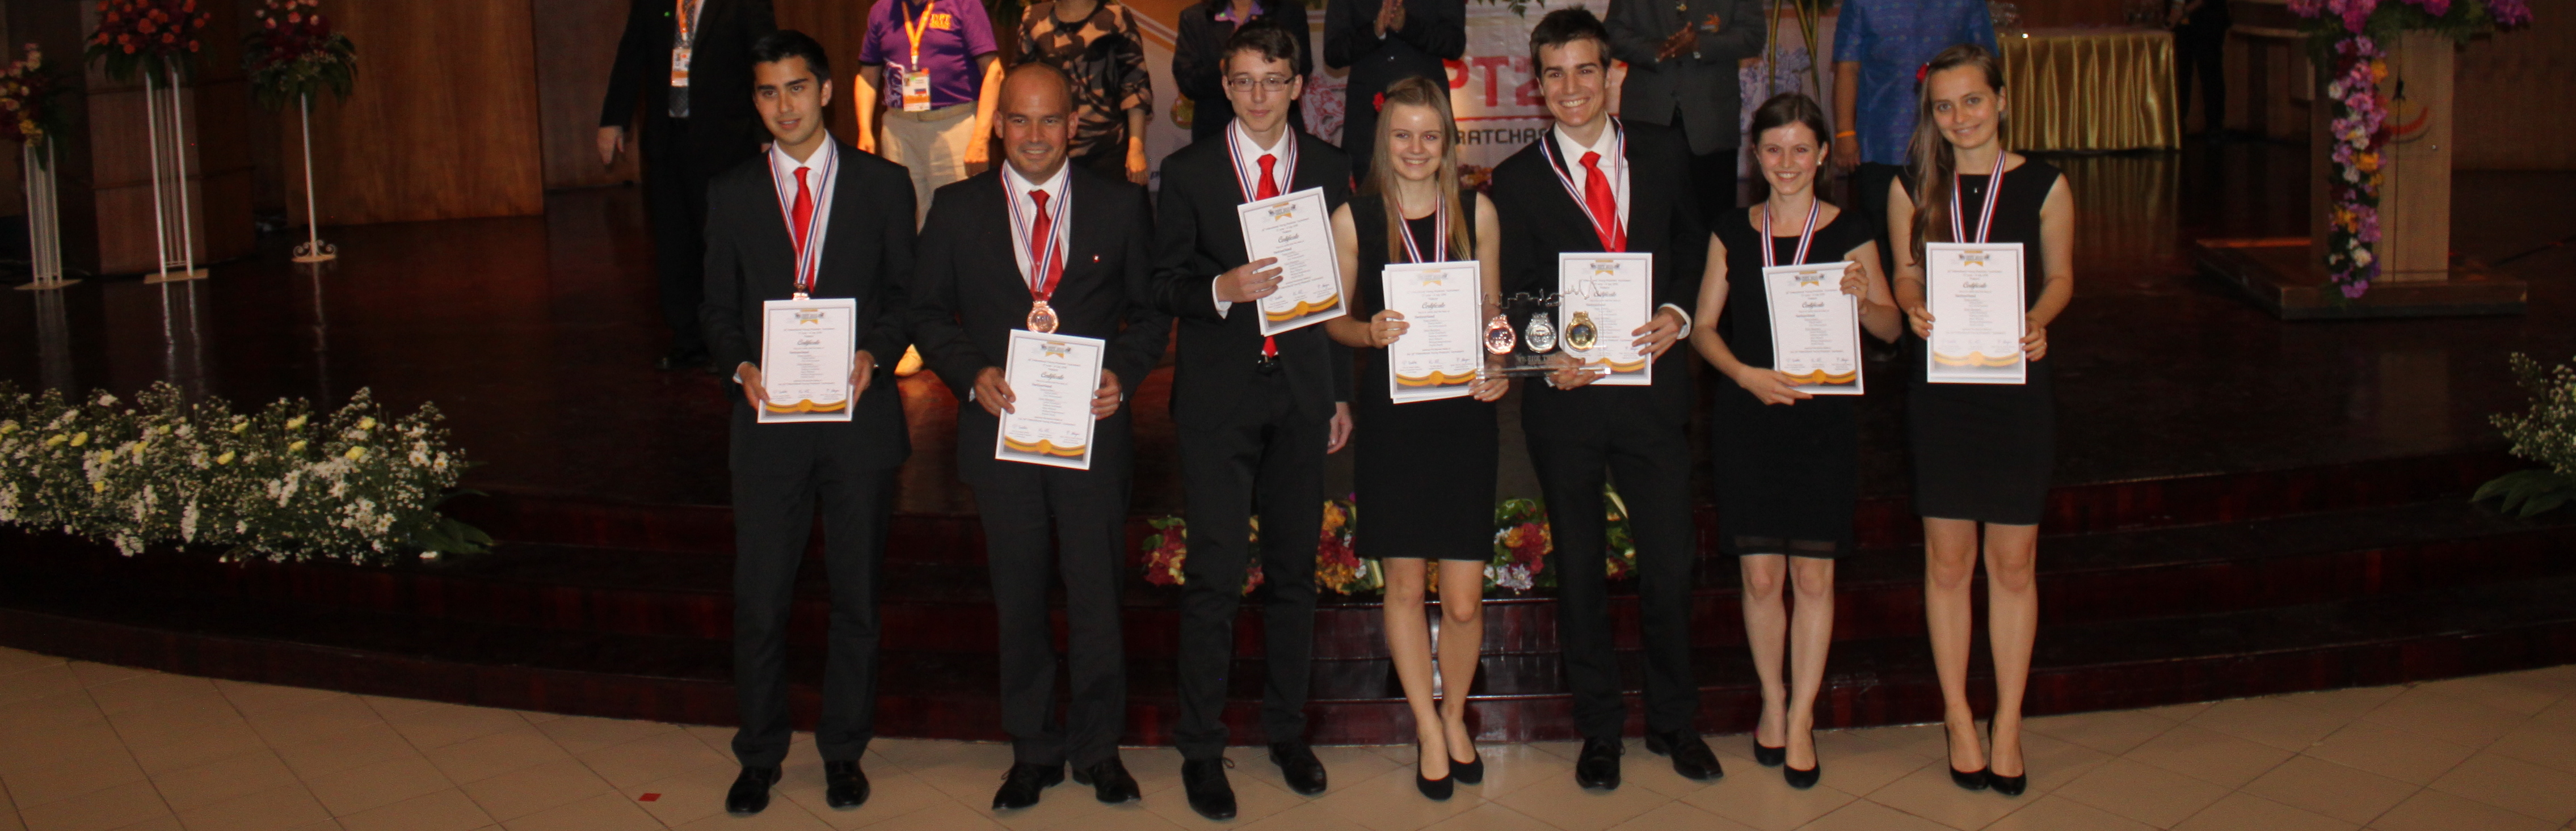 IYPT 2015 - Award Ceremony